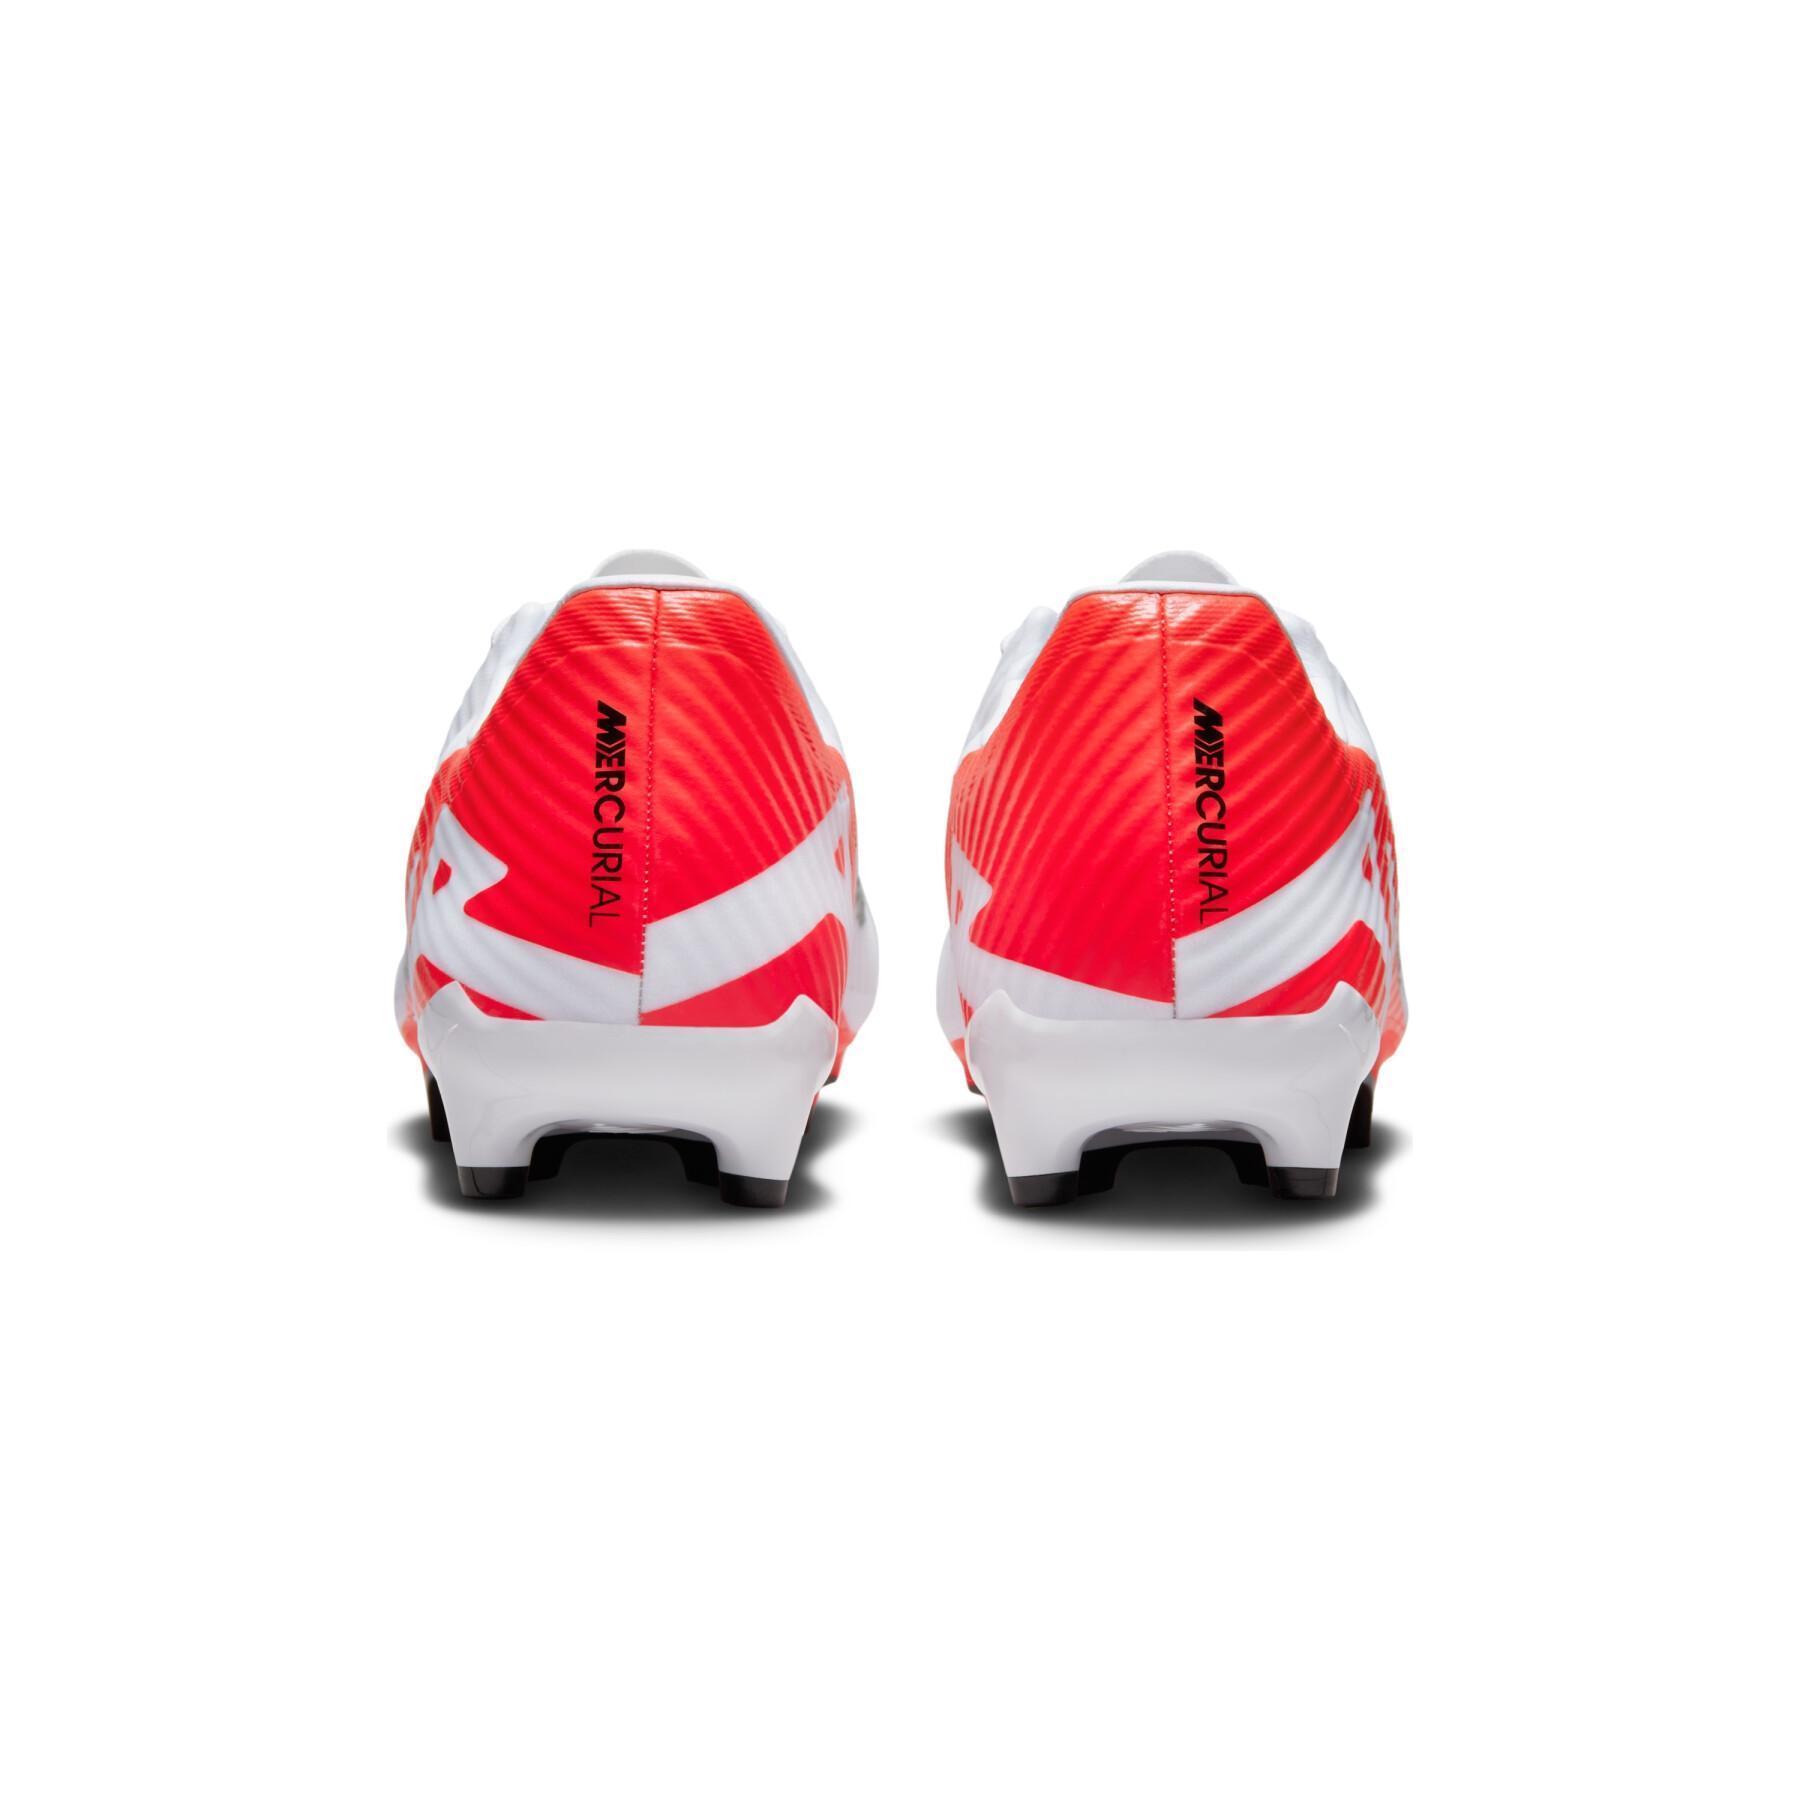 Sapatos de futebol Nike Mercurial Vapor 15 Academy MG - Ready Pack